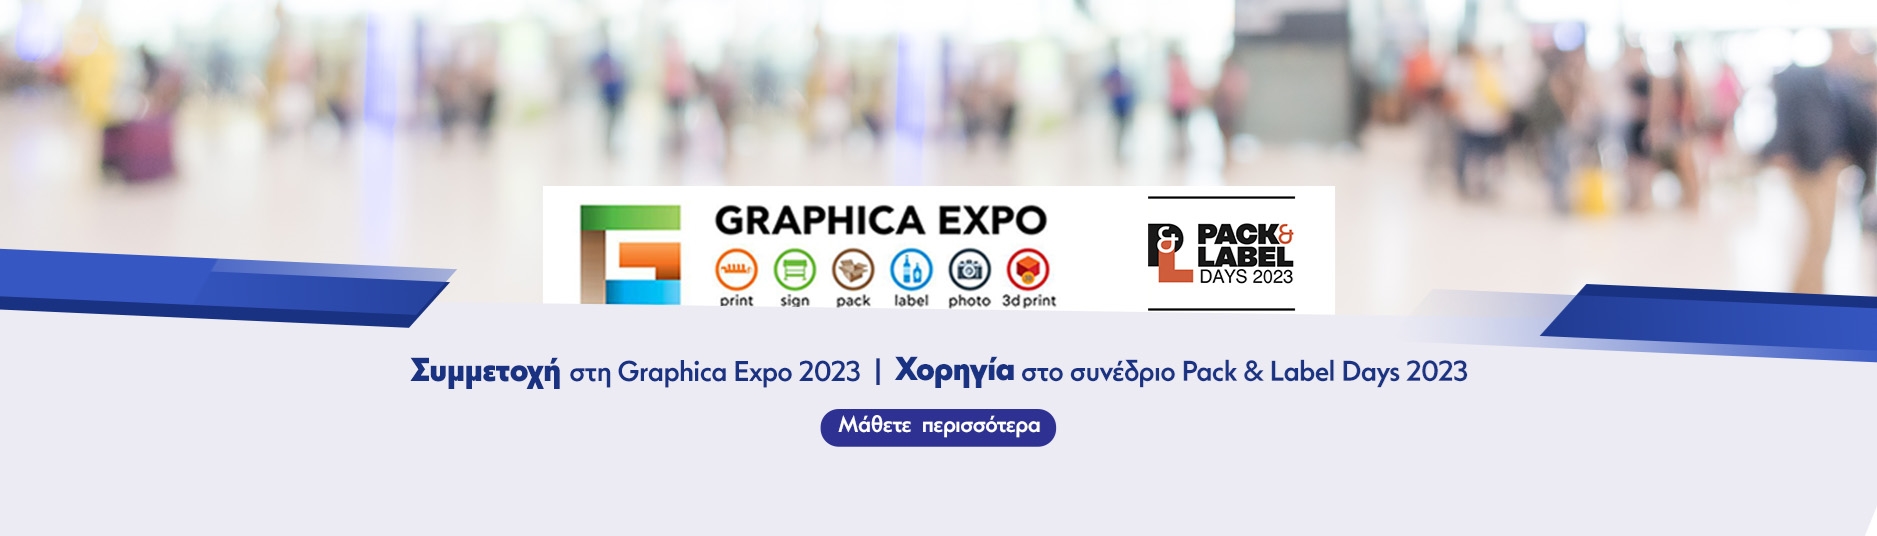 Δελτίο Τύπου: Συμμετοχή στην Graphica Expo και Χορηγία στο συνέδριο Pack & Label Days 2023